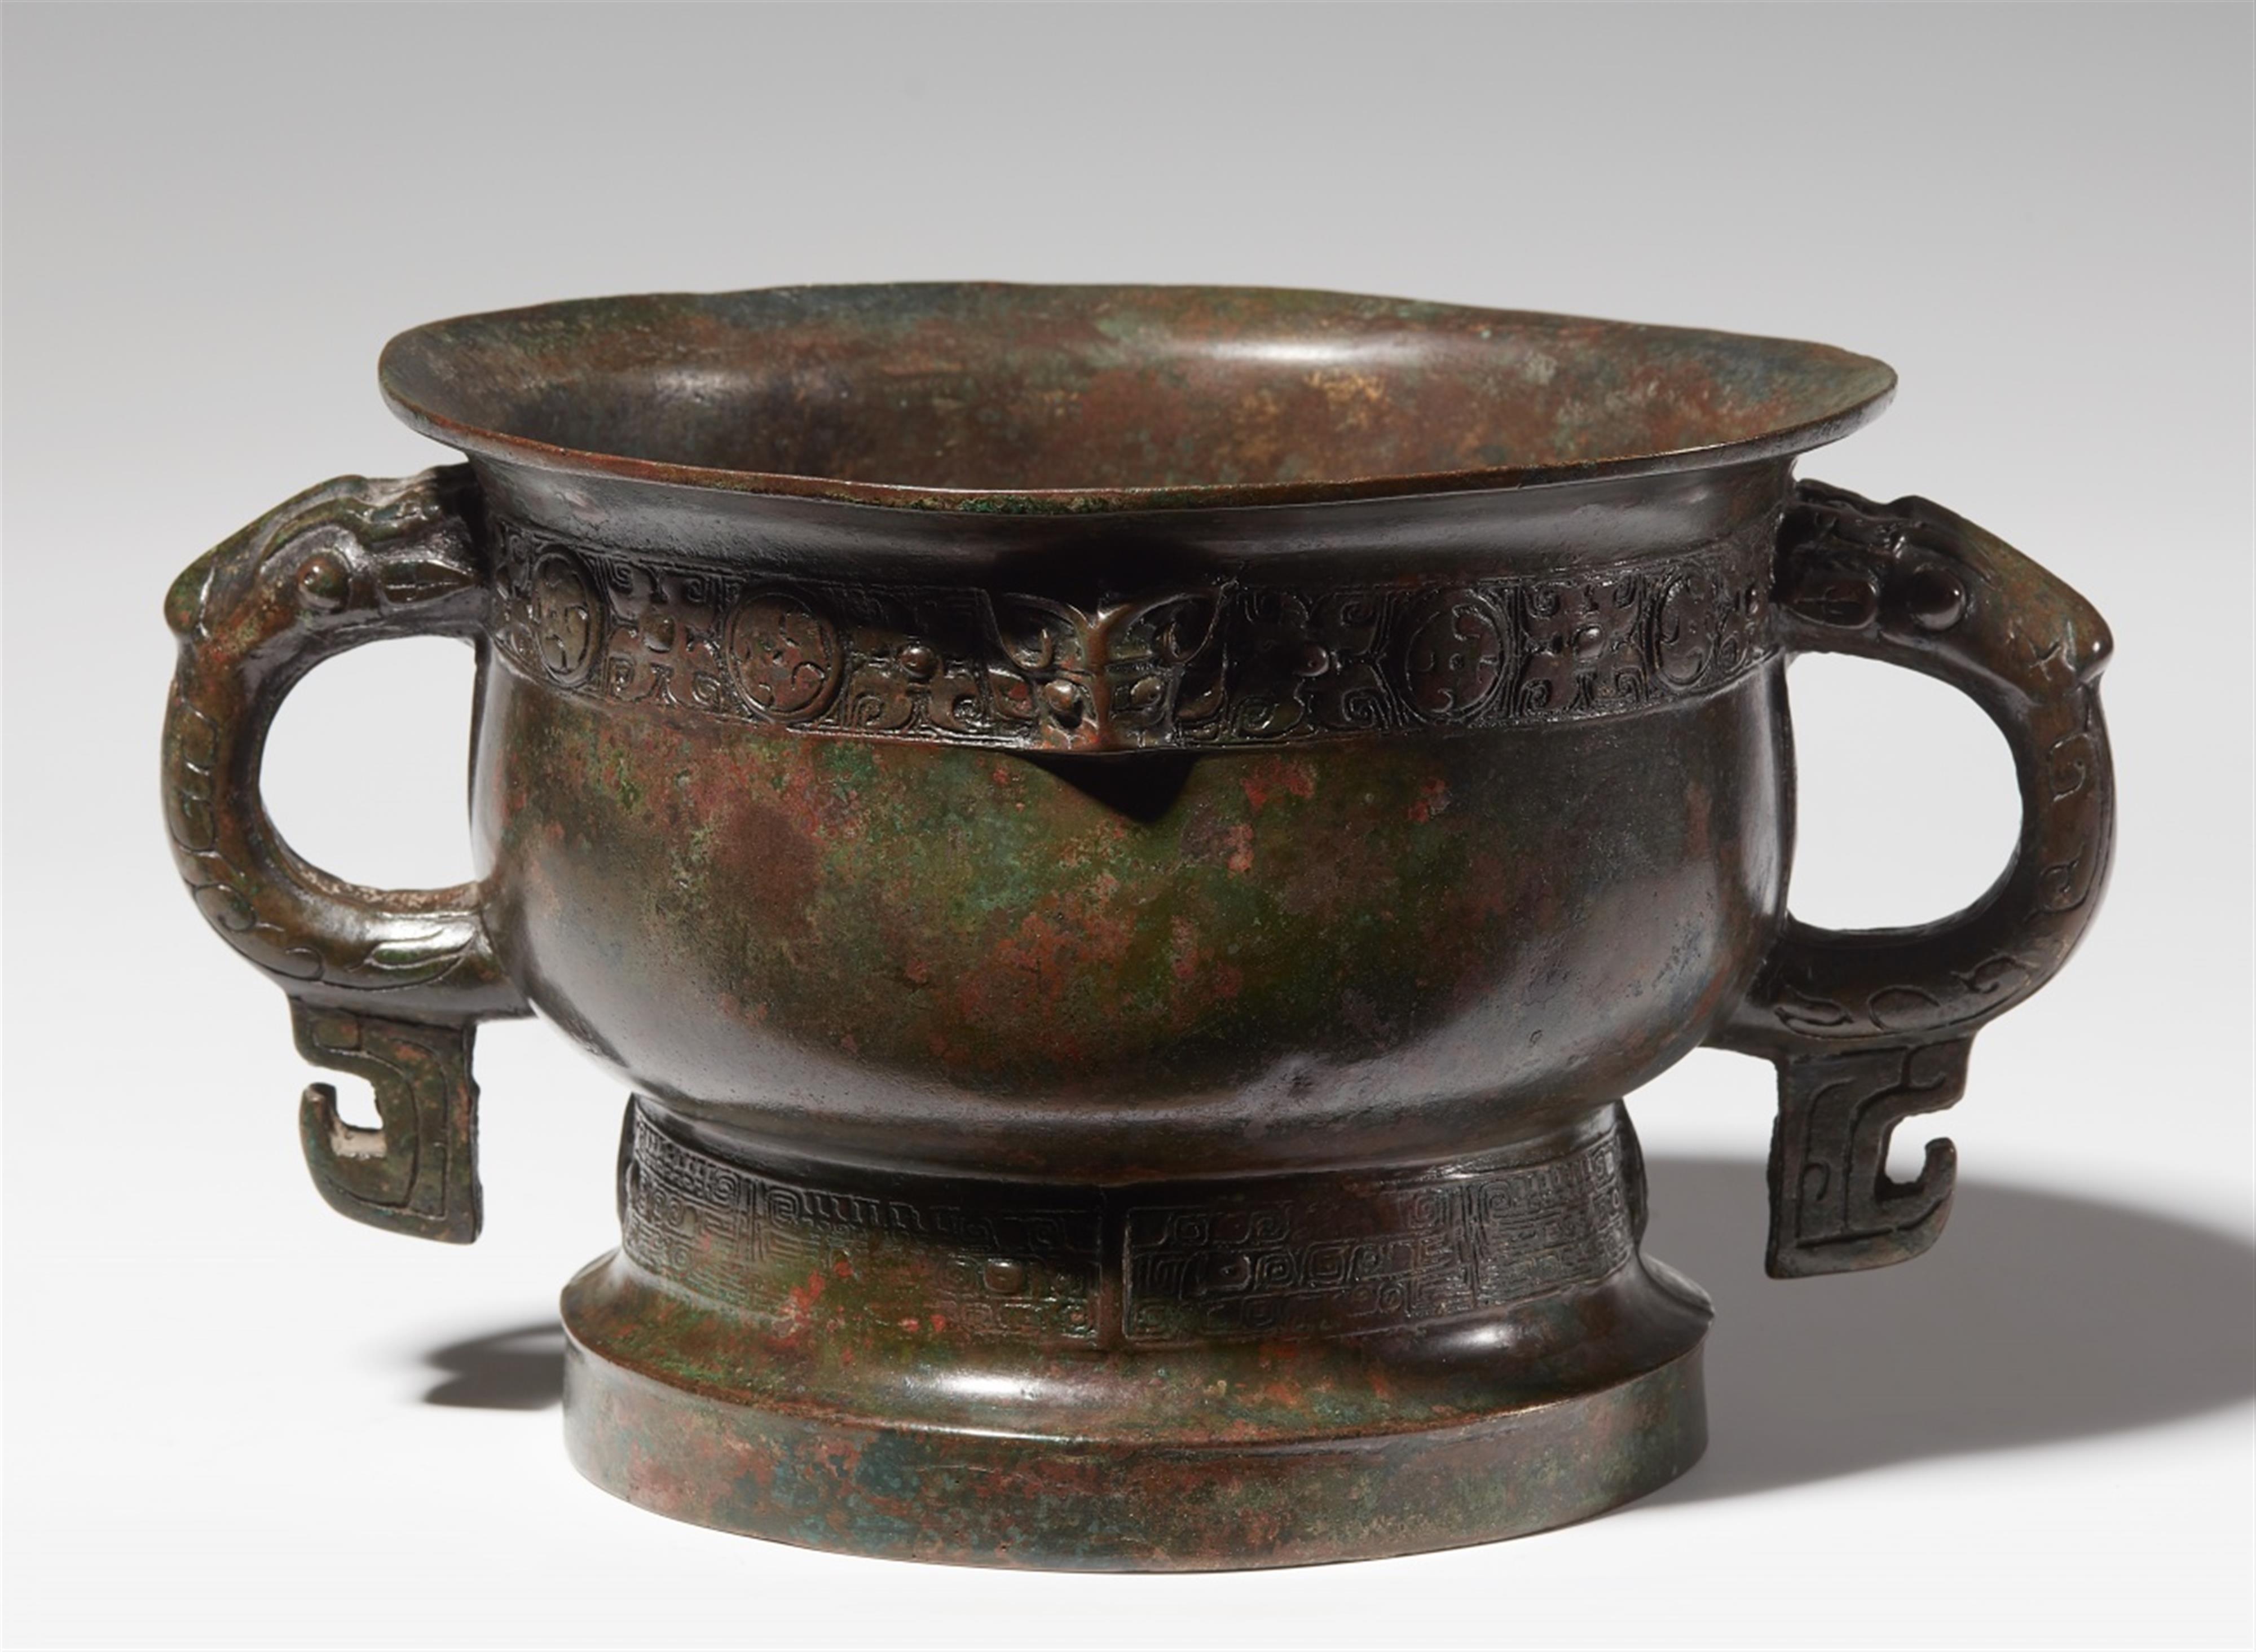 Speisegefäß vom Typ gui. Bronze. Frühe Westliche Zhou-Zeit, 11. Jh. v. Chr. - image-1